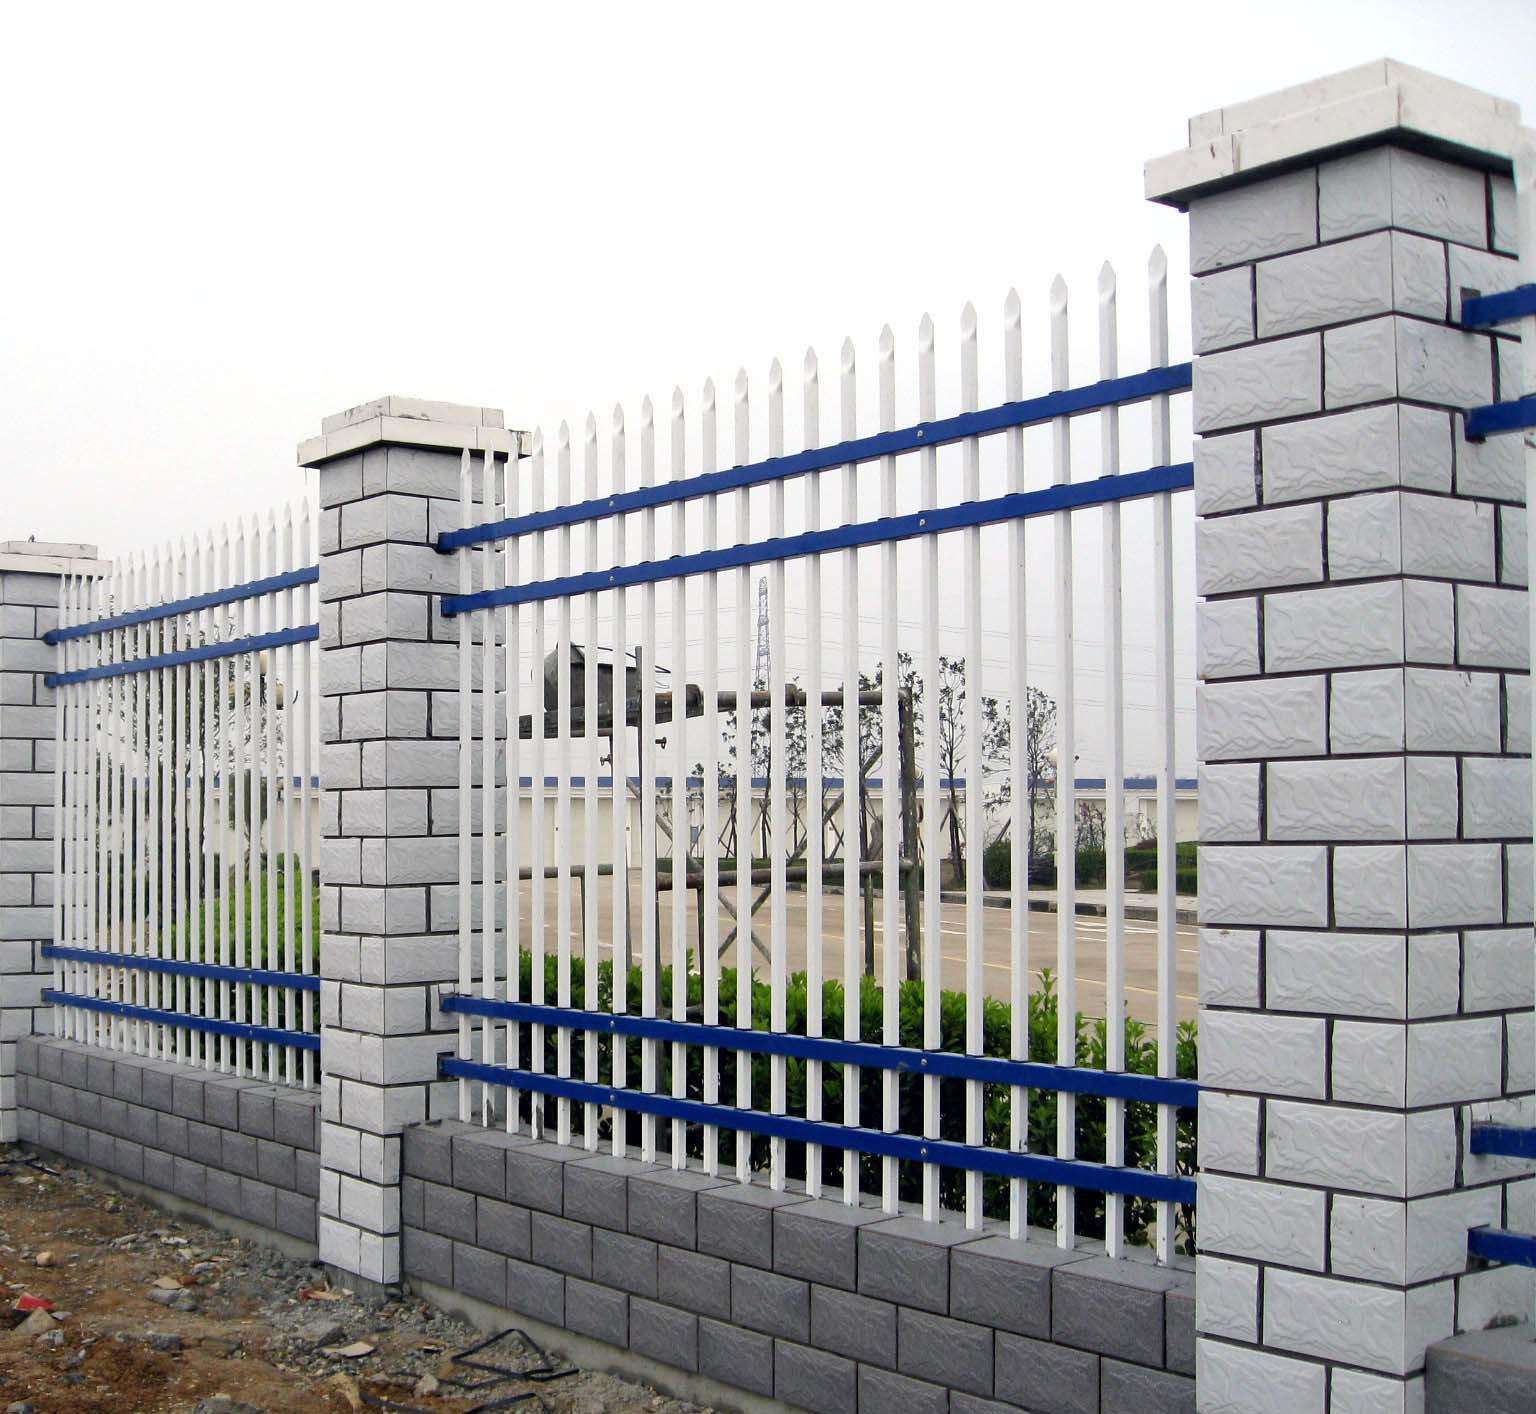 锌钢护栏 阳台护栏 交通设施 道路隔离栅 工艺防护栏 厂家供应